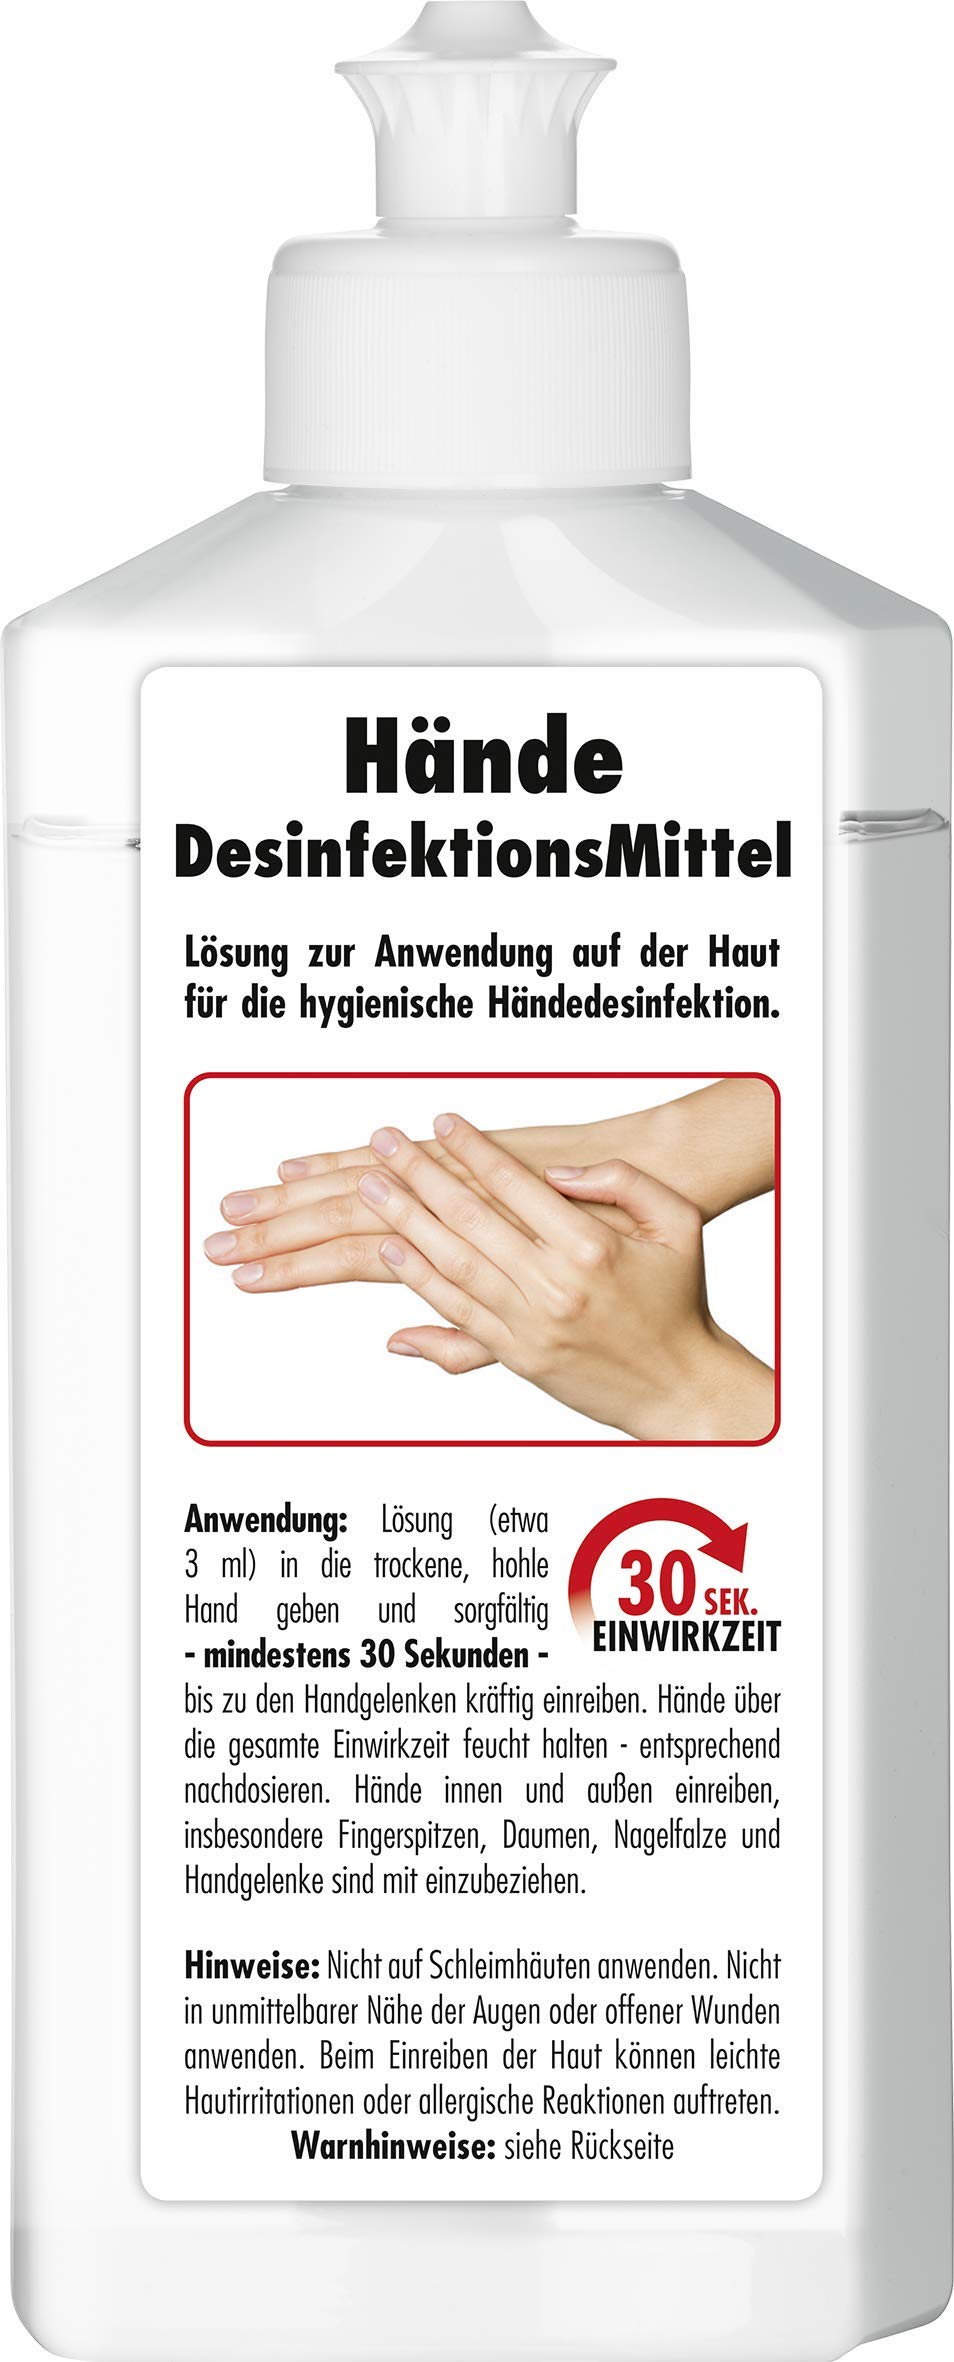 SONAX Handdesinfektionsmittel (250 ml) schützt gegen Bakterien & Viren für hygienische & wirksame Händedesinfektion - made in Germany | Art-Nr. 04011410 von SONAX